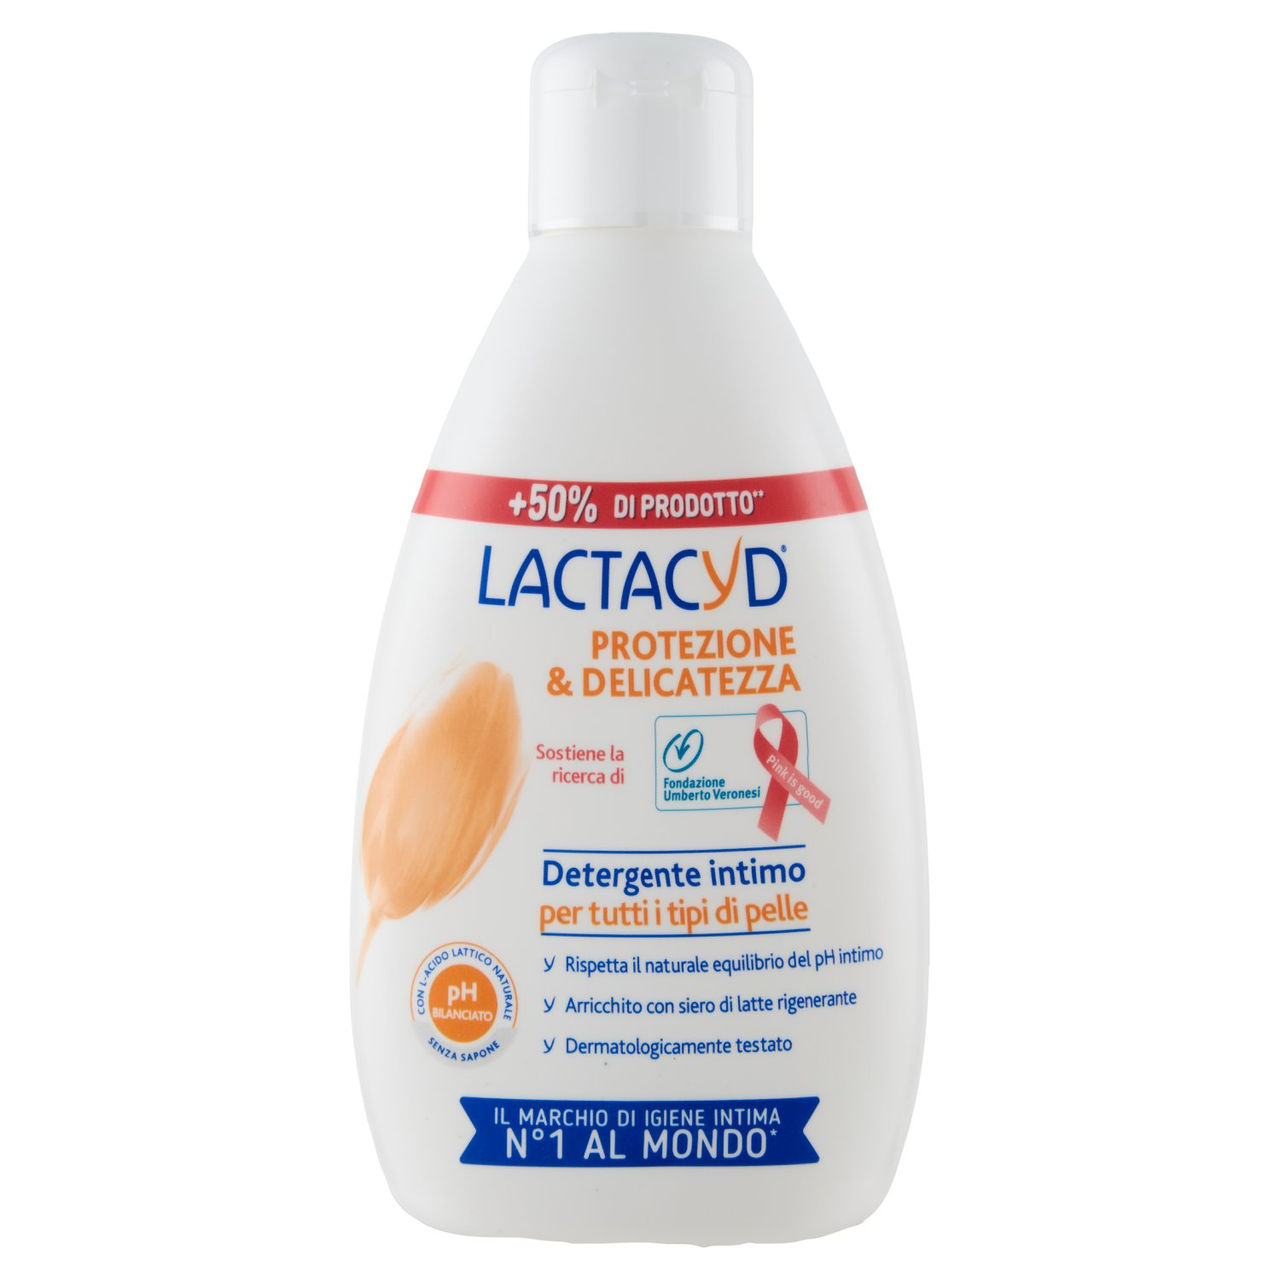 Lactacyd Protezione&Delicatezza Detergente intimo